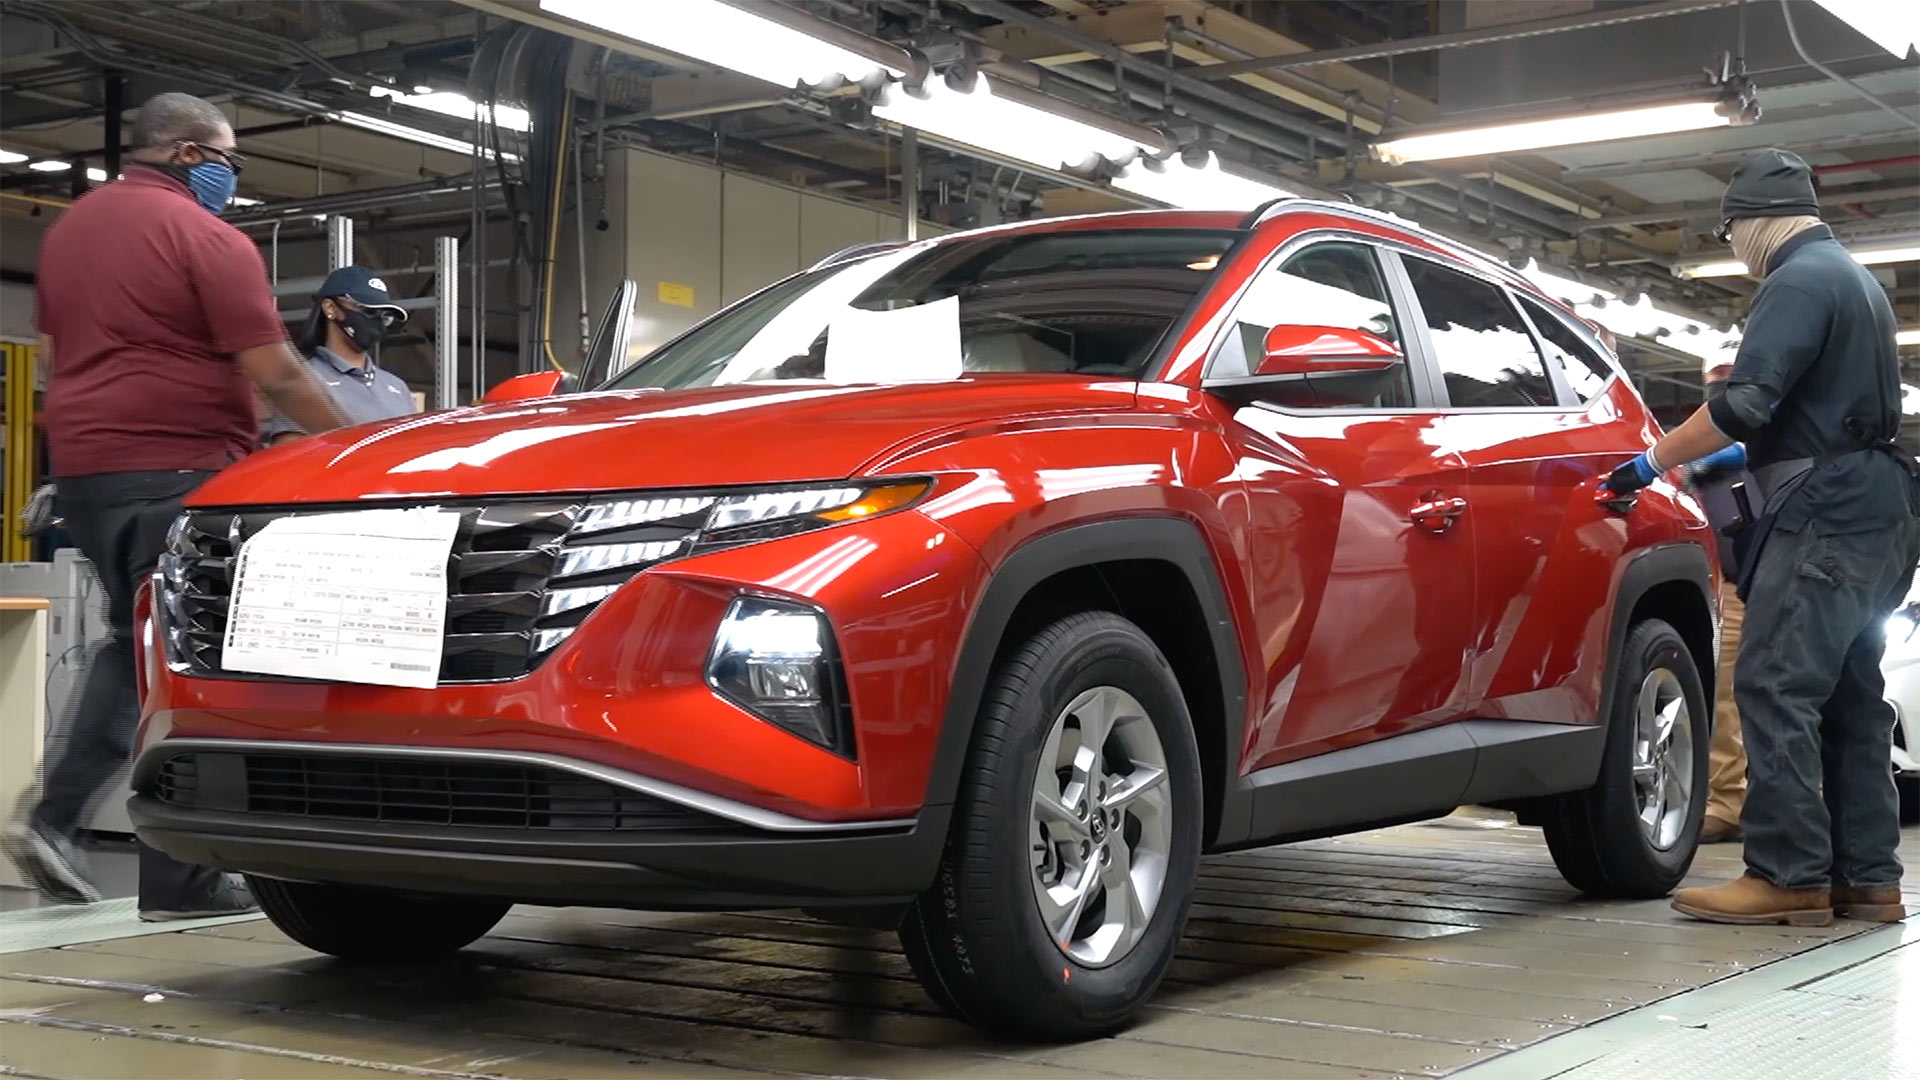 Khám phá dây chuyền sản xuất Hyundai Tucson 2022 - Mẫu crossover rất được mong đợi tại Việt Nam